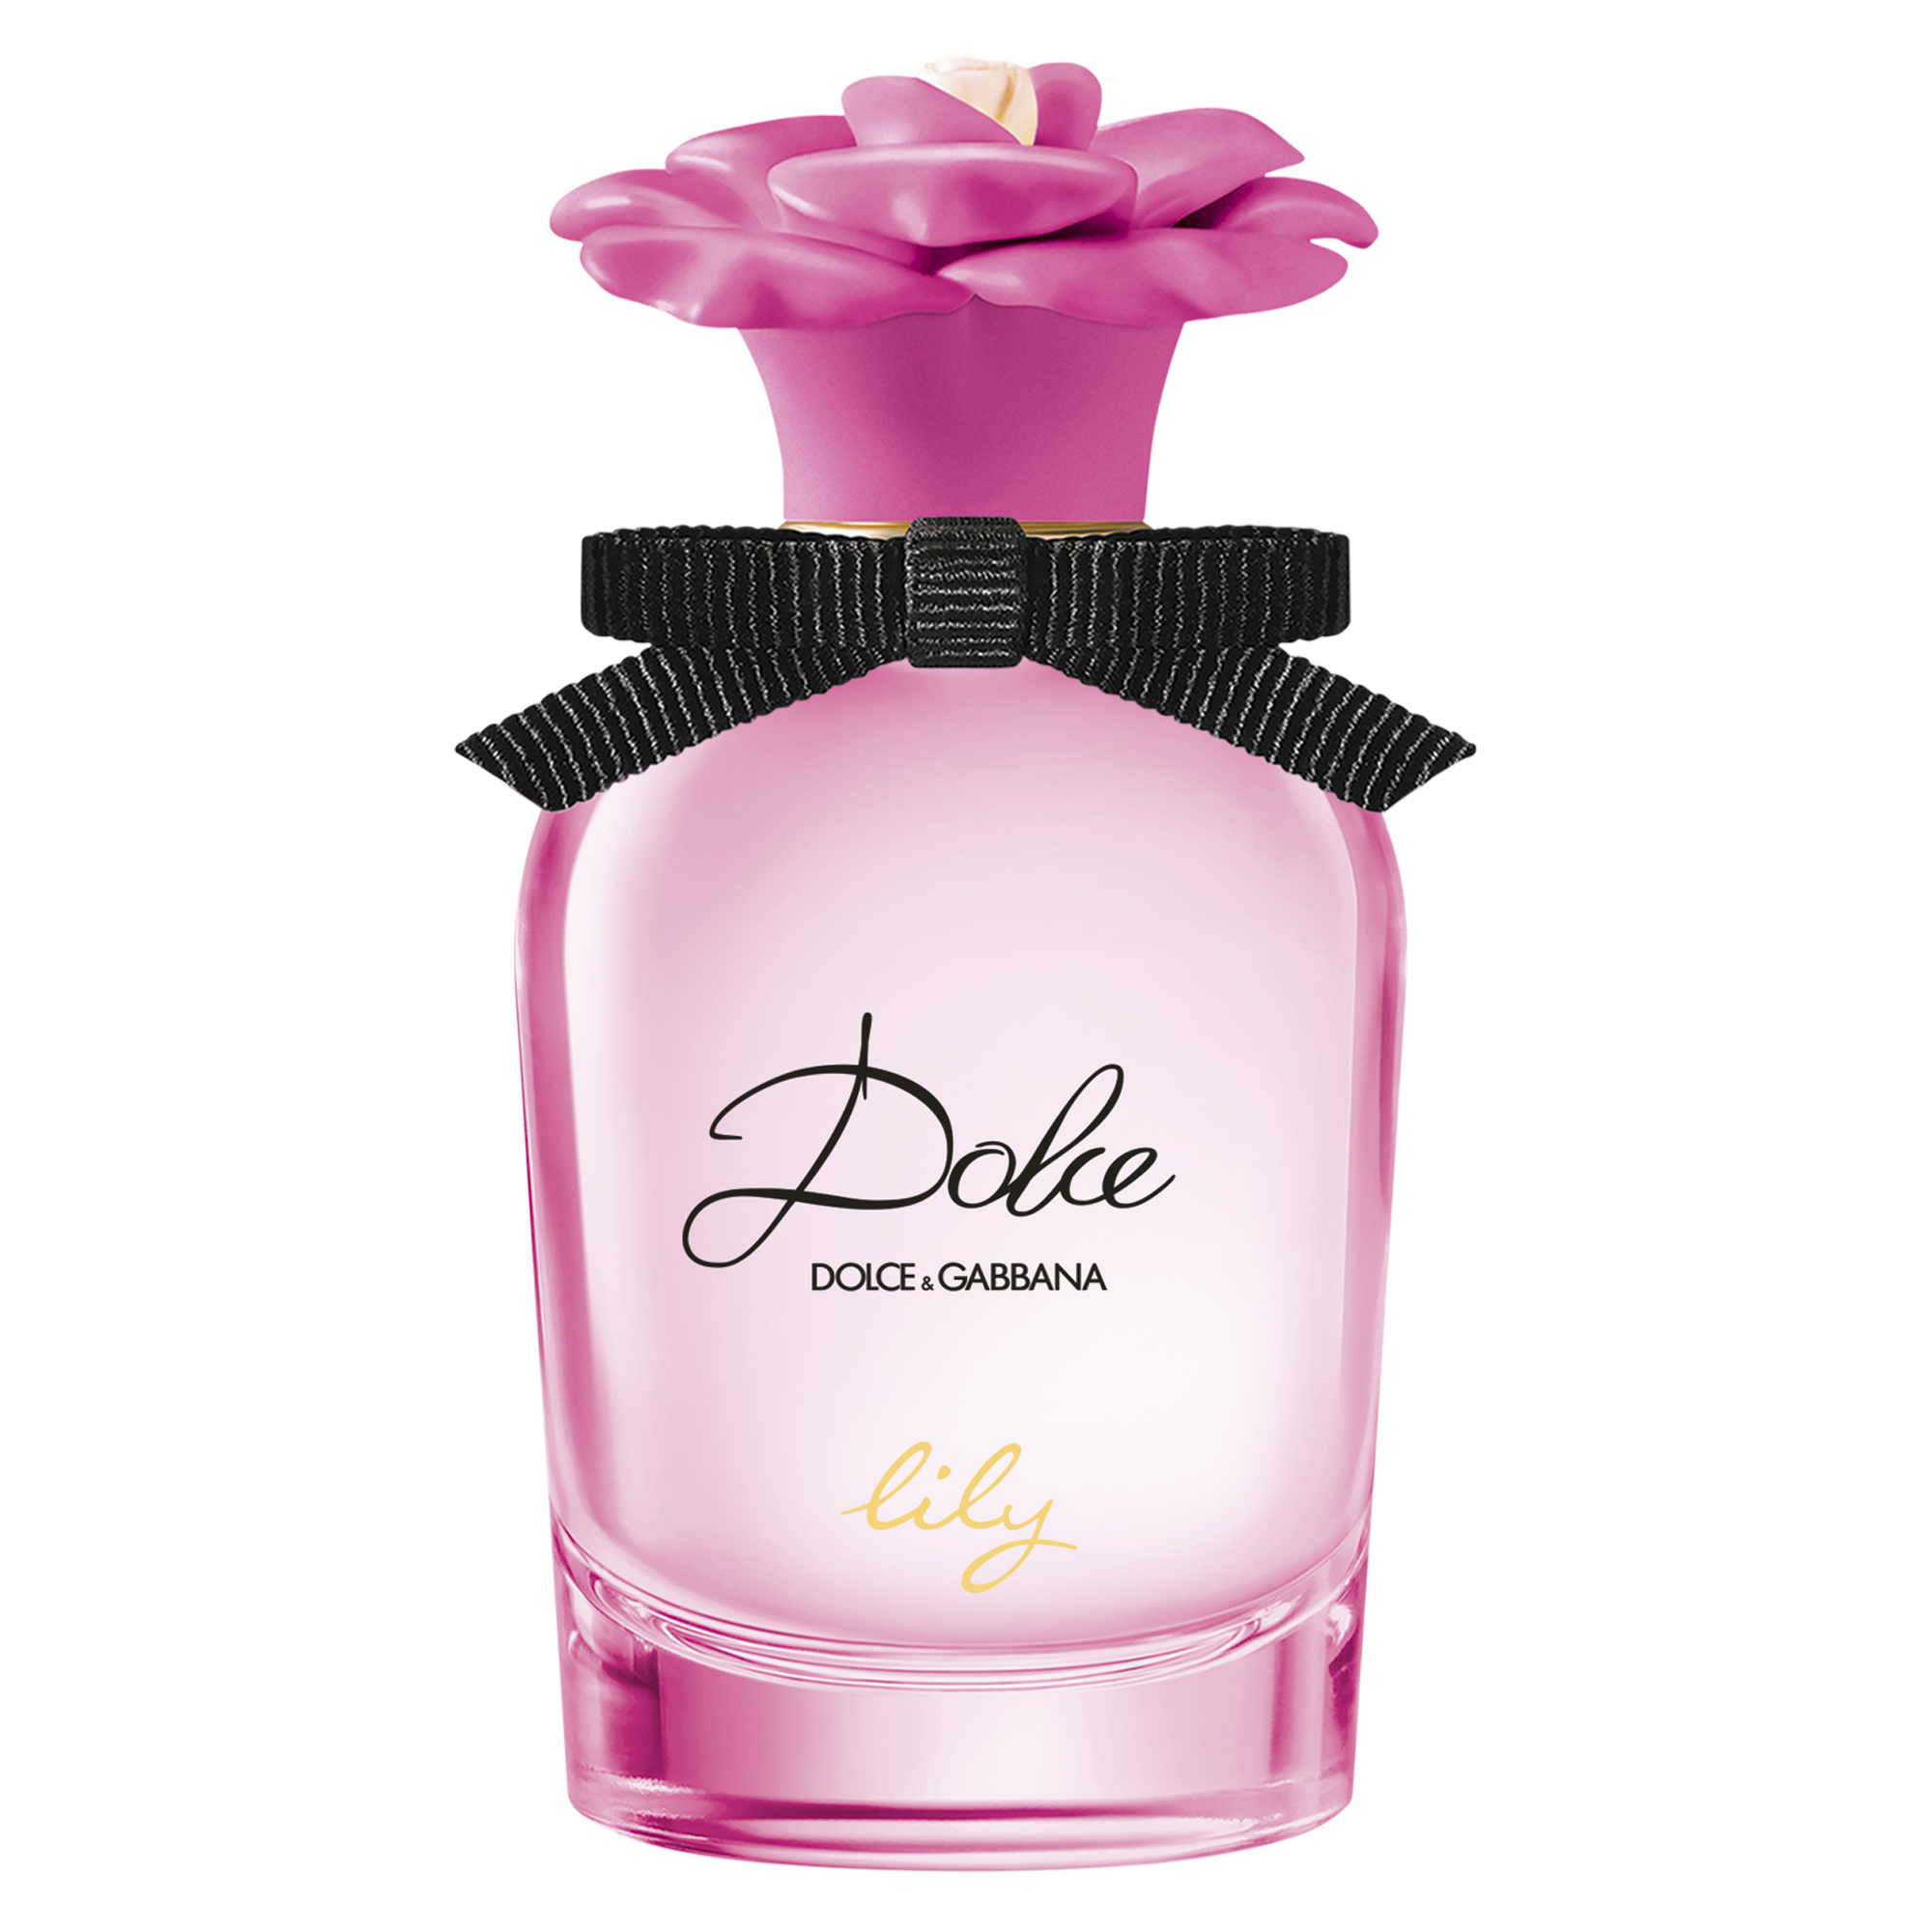 Dolce & Gabbana - Dolce Lily EdT